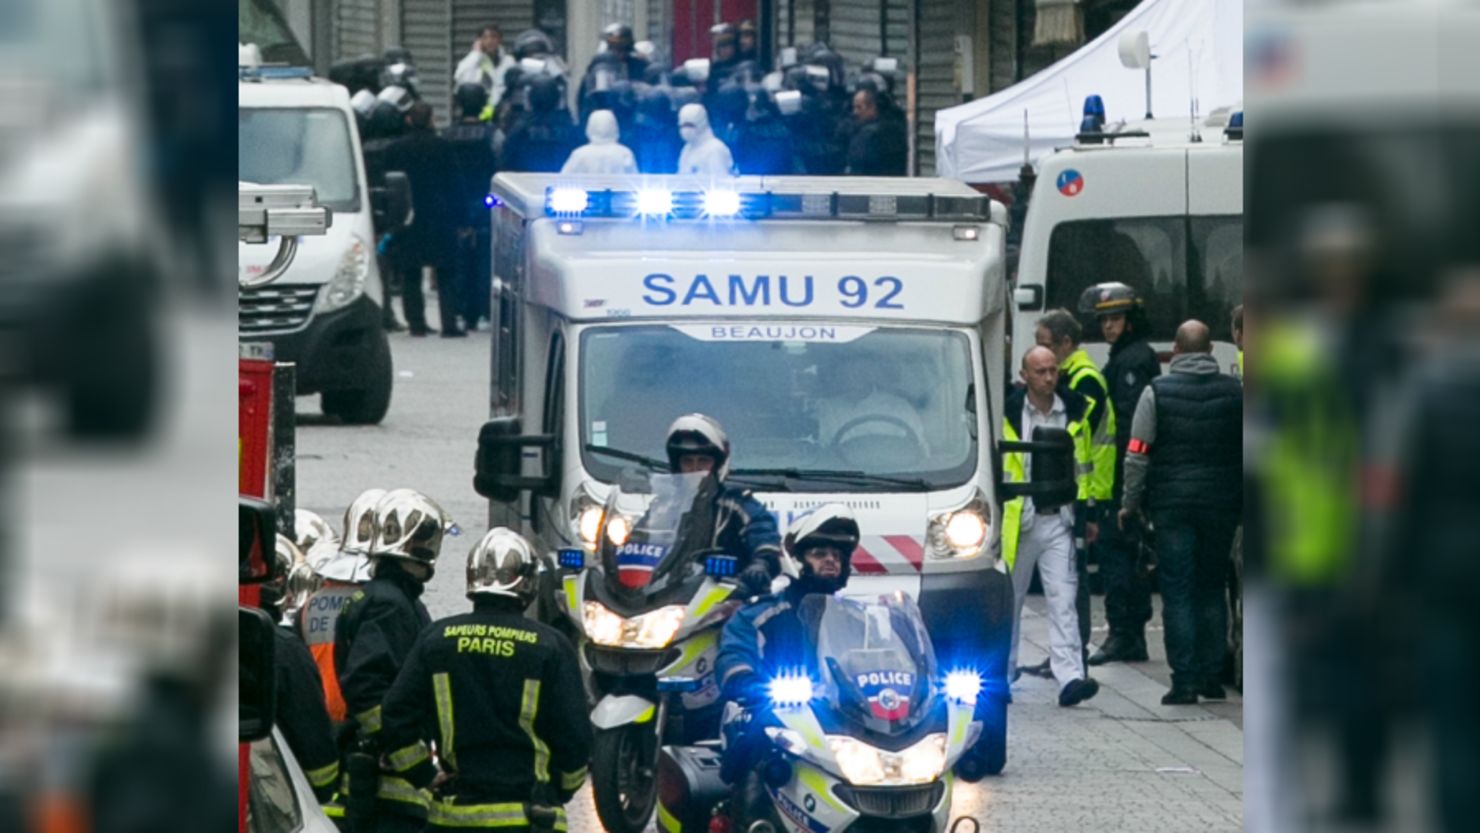 Dos redadas tuvieron lugar el 18 de noviembre en Saint Denis, un suburbio al norte de París donde el 13 de noviembre ocurrió un ataque terrorista en el Stade de France.